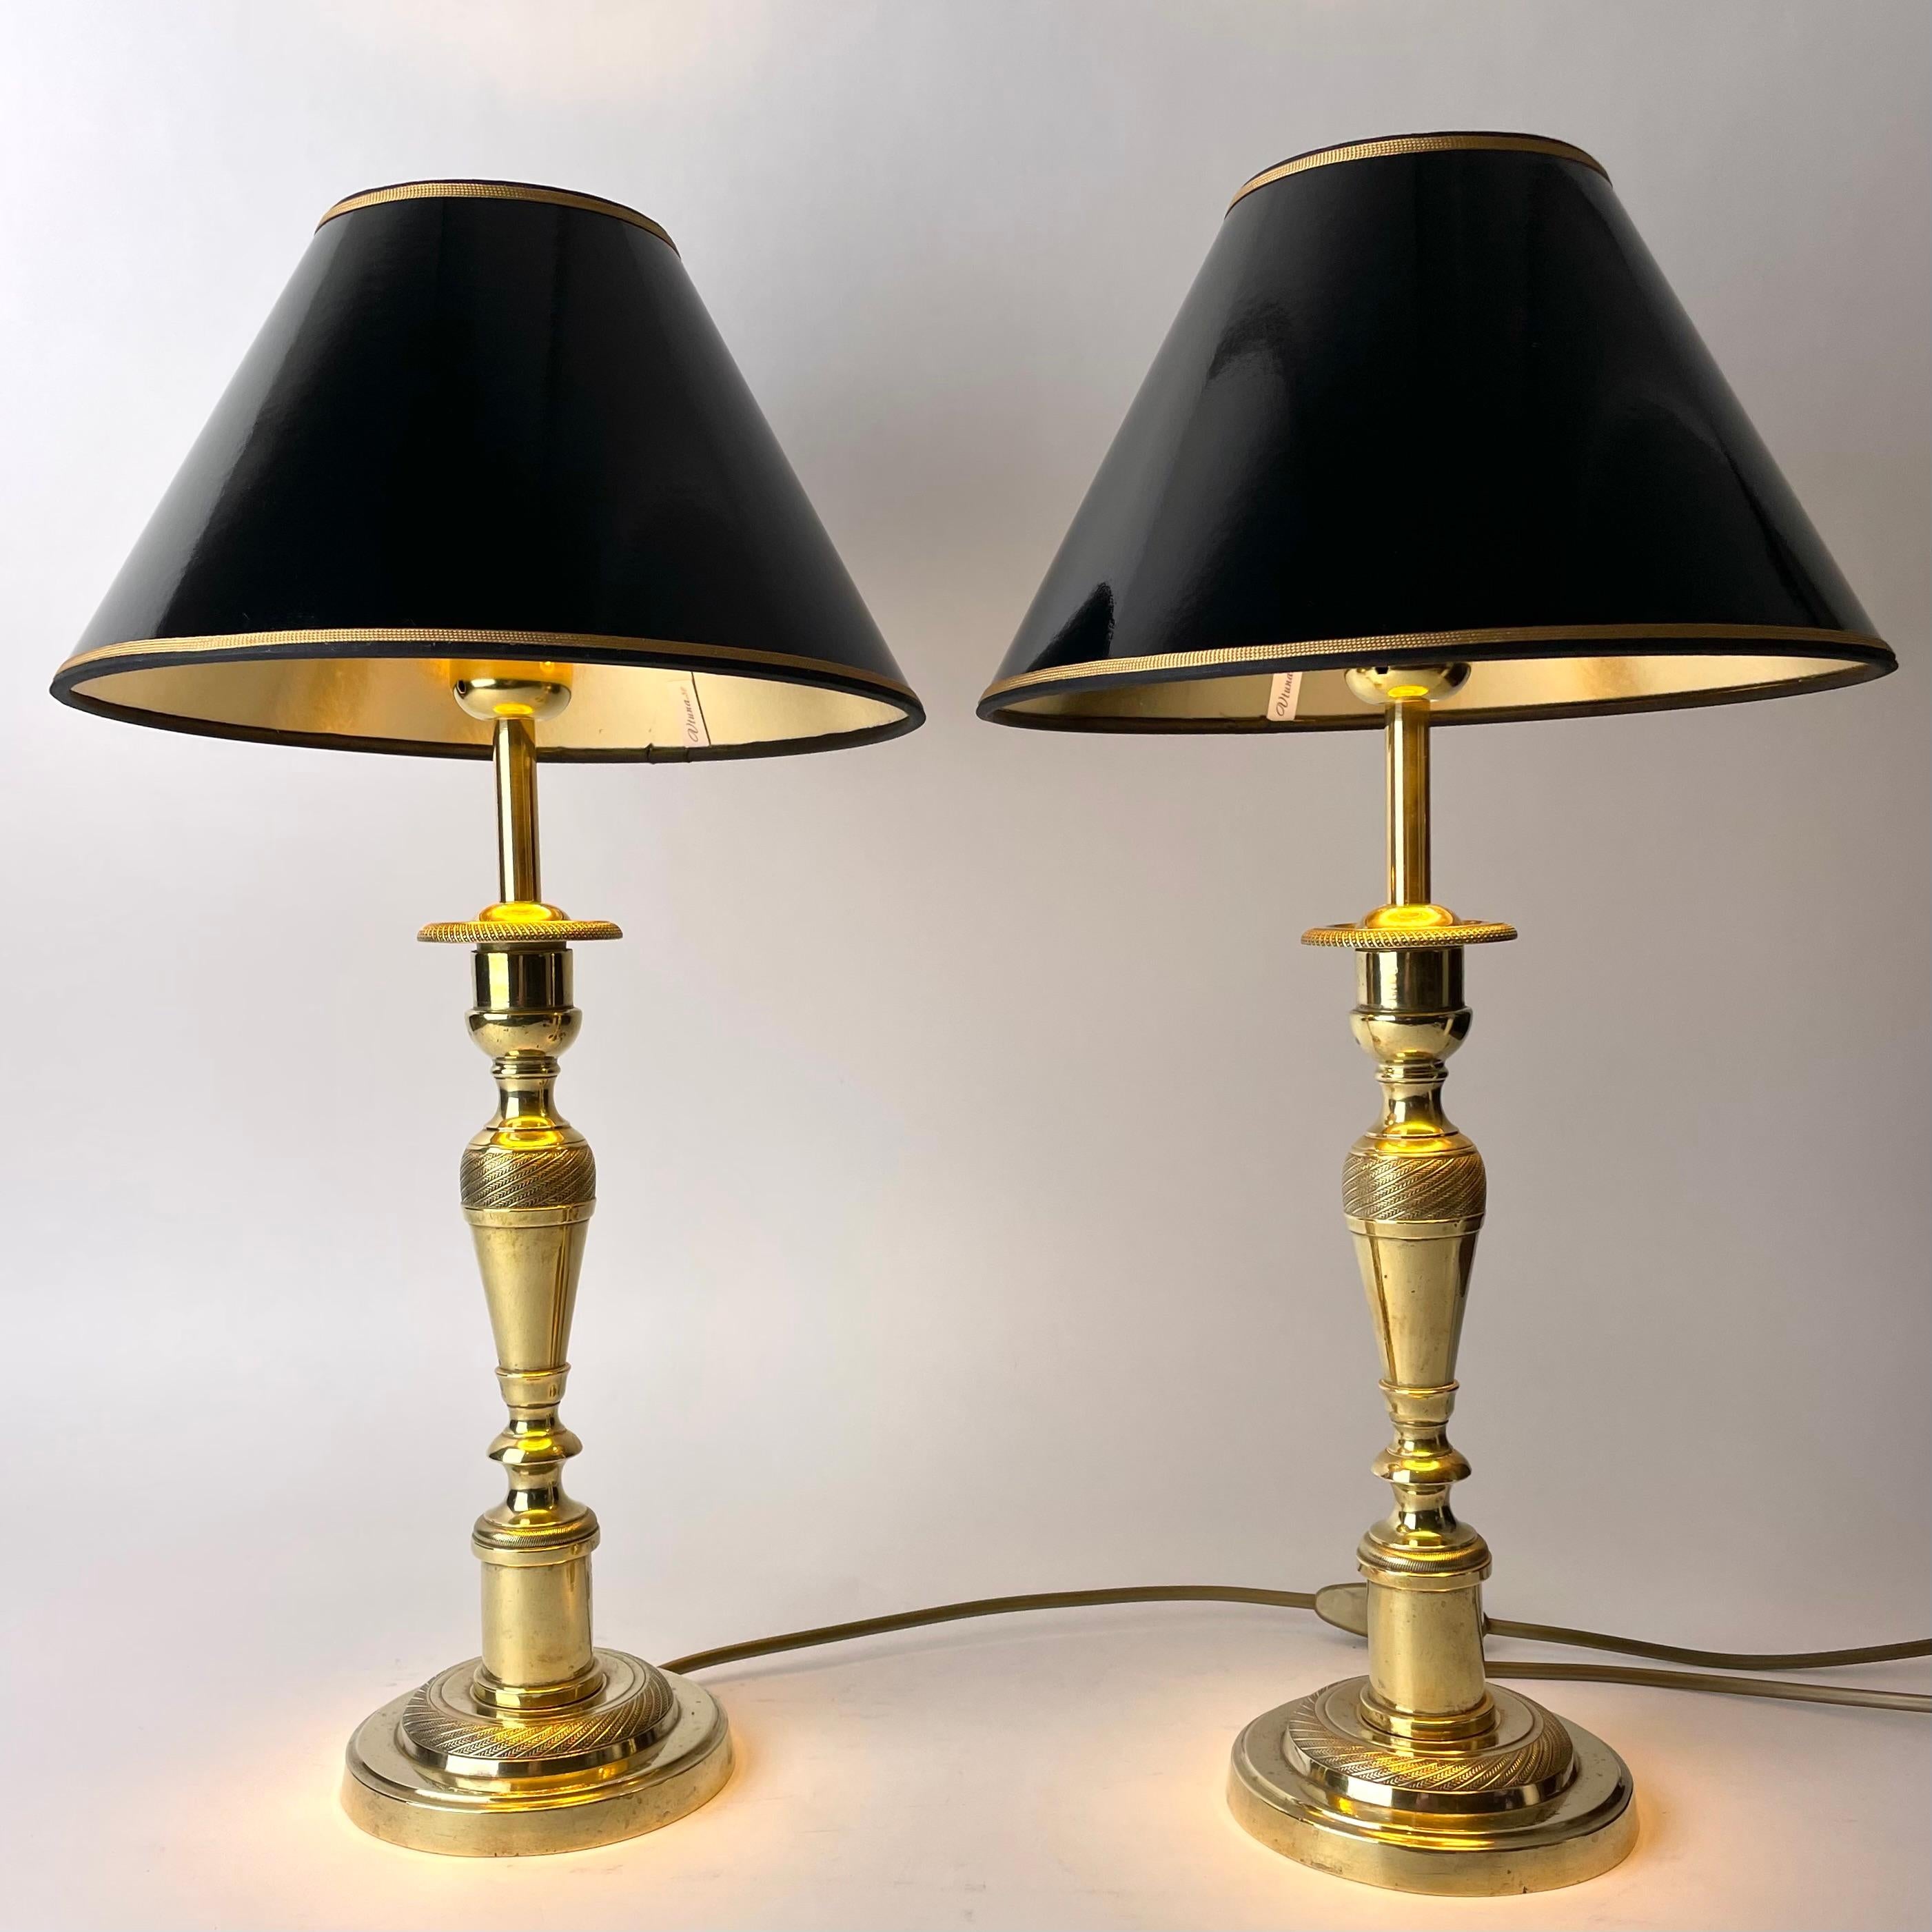 Magnifique paire de lampes de table Empire en laiton. A l'origine, il s'agissait de chandeliers datant des années 1820, transformés en lampes de table au début du 20e siècle. 

Électricité refaite à neuf.

Nouveaux abat-jour en laque noire avec